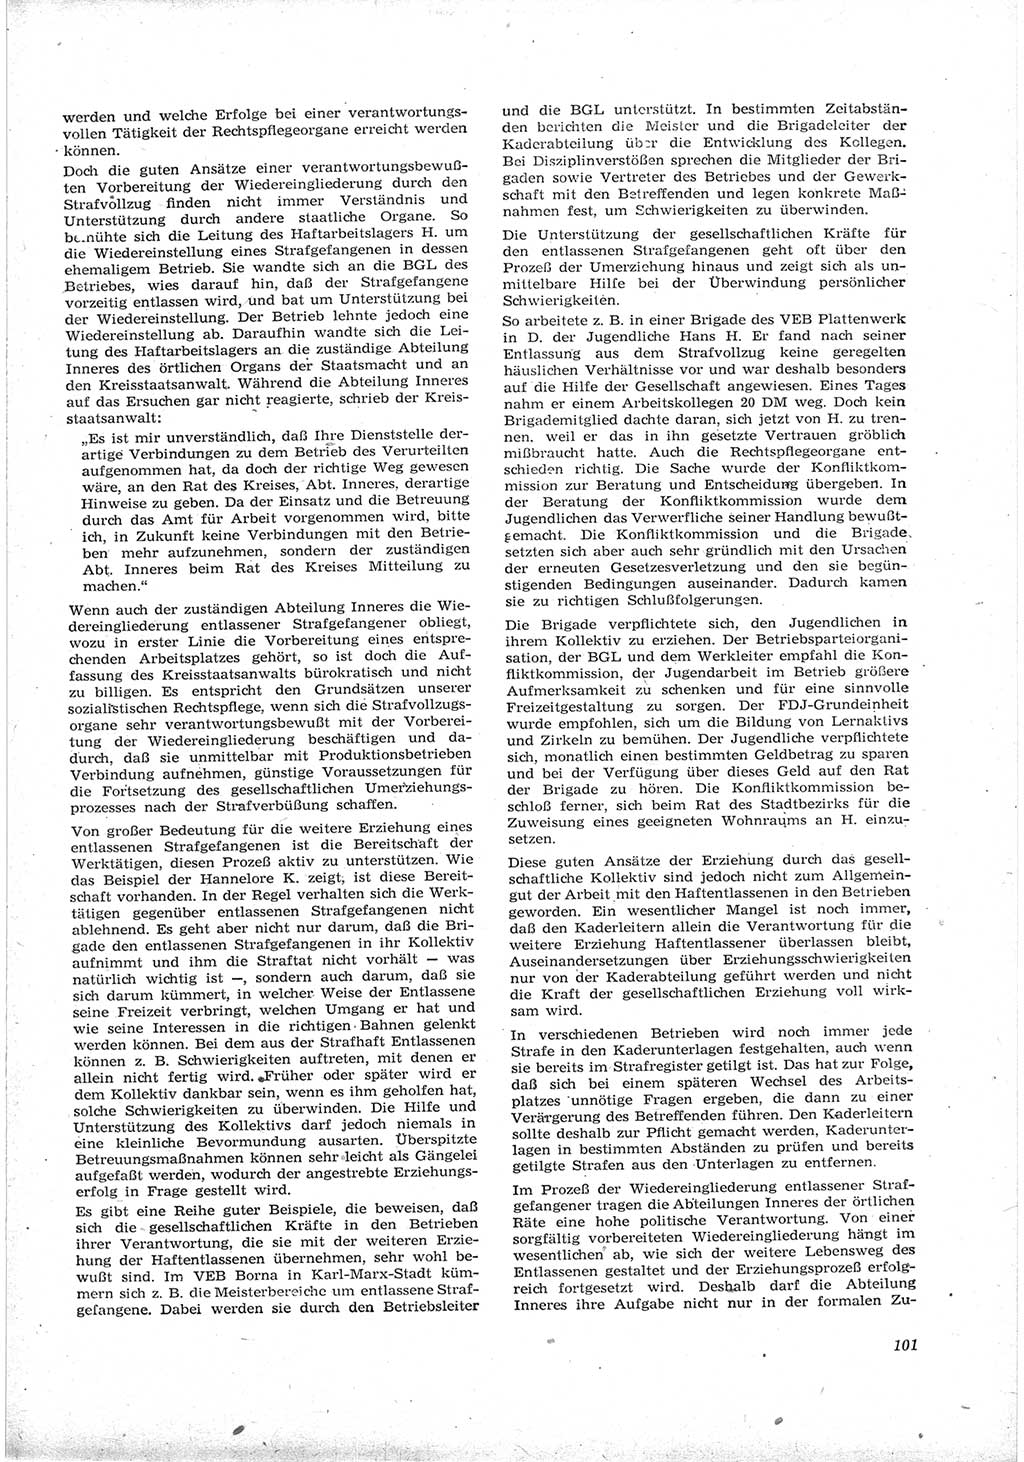 Neue Justiz (NJ), Zeitschrift für Recht und Rechtswissenschaft [Deutsche Demokratische Republik (DDR)], 17. Jahrgang 1963, Seite 101 (NJ DDR 1963, S. 101)